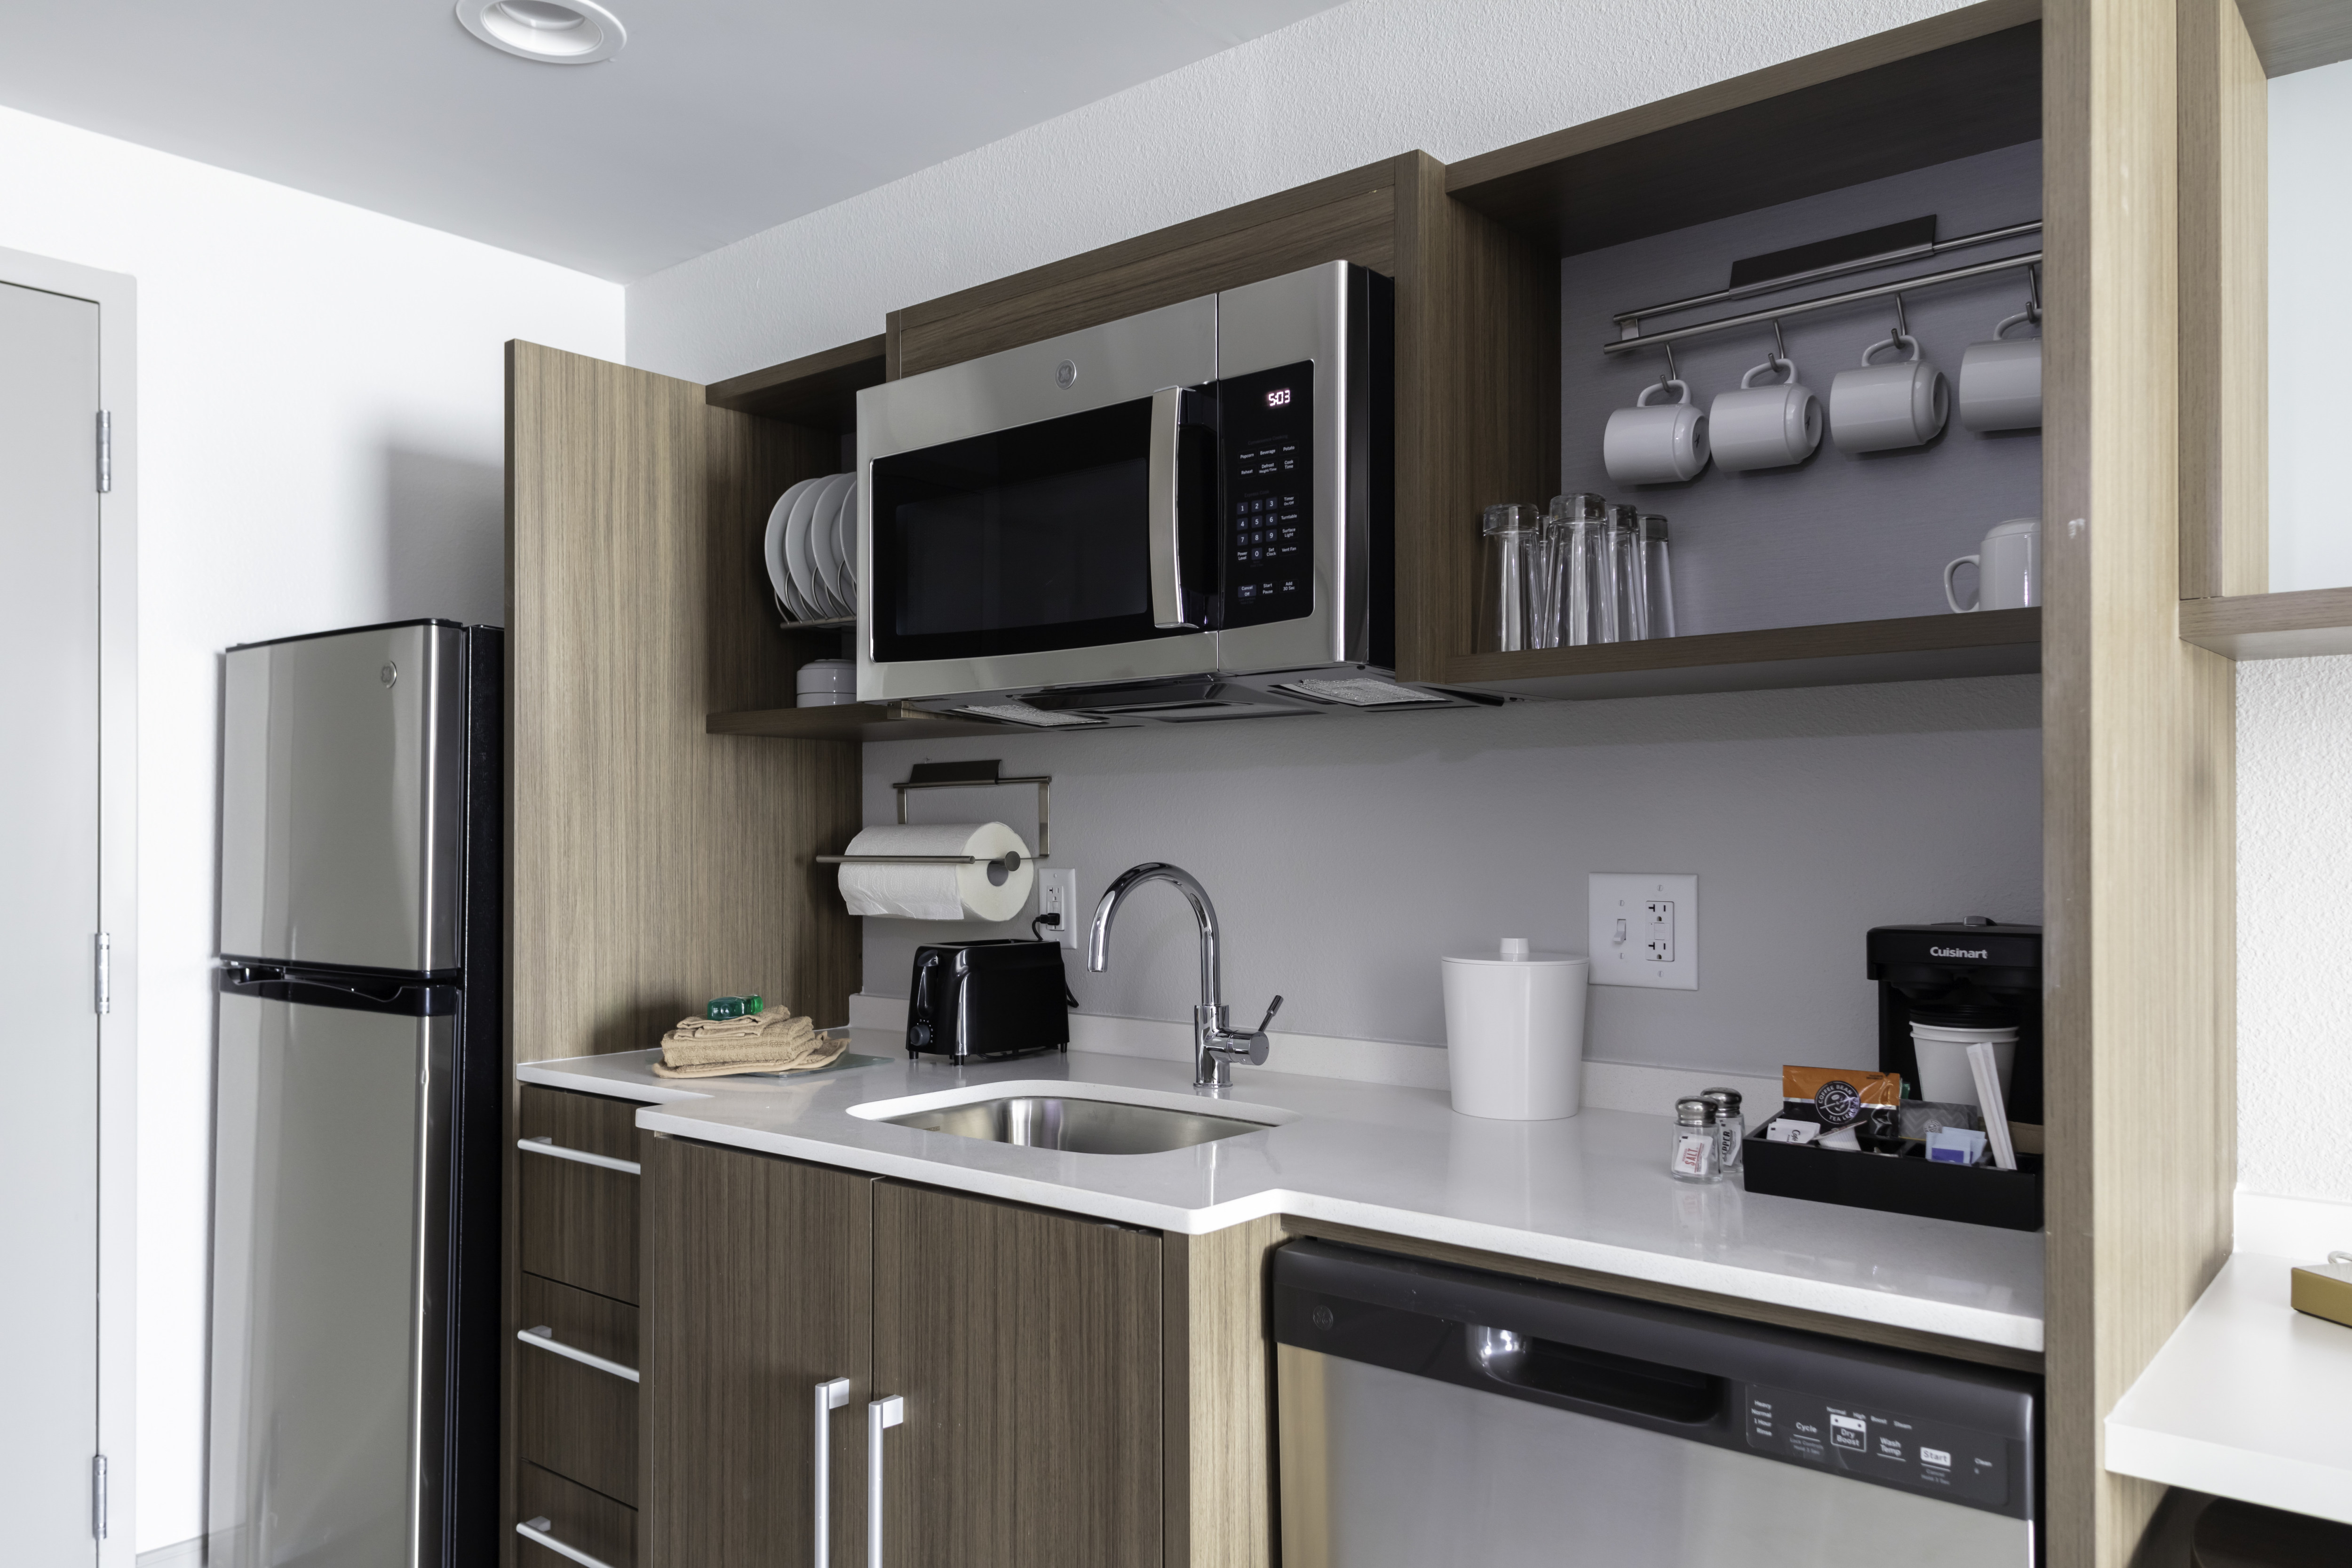 guest suite kitchen, refrigerator, microwave, dishwasher